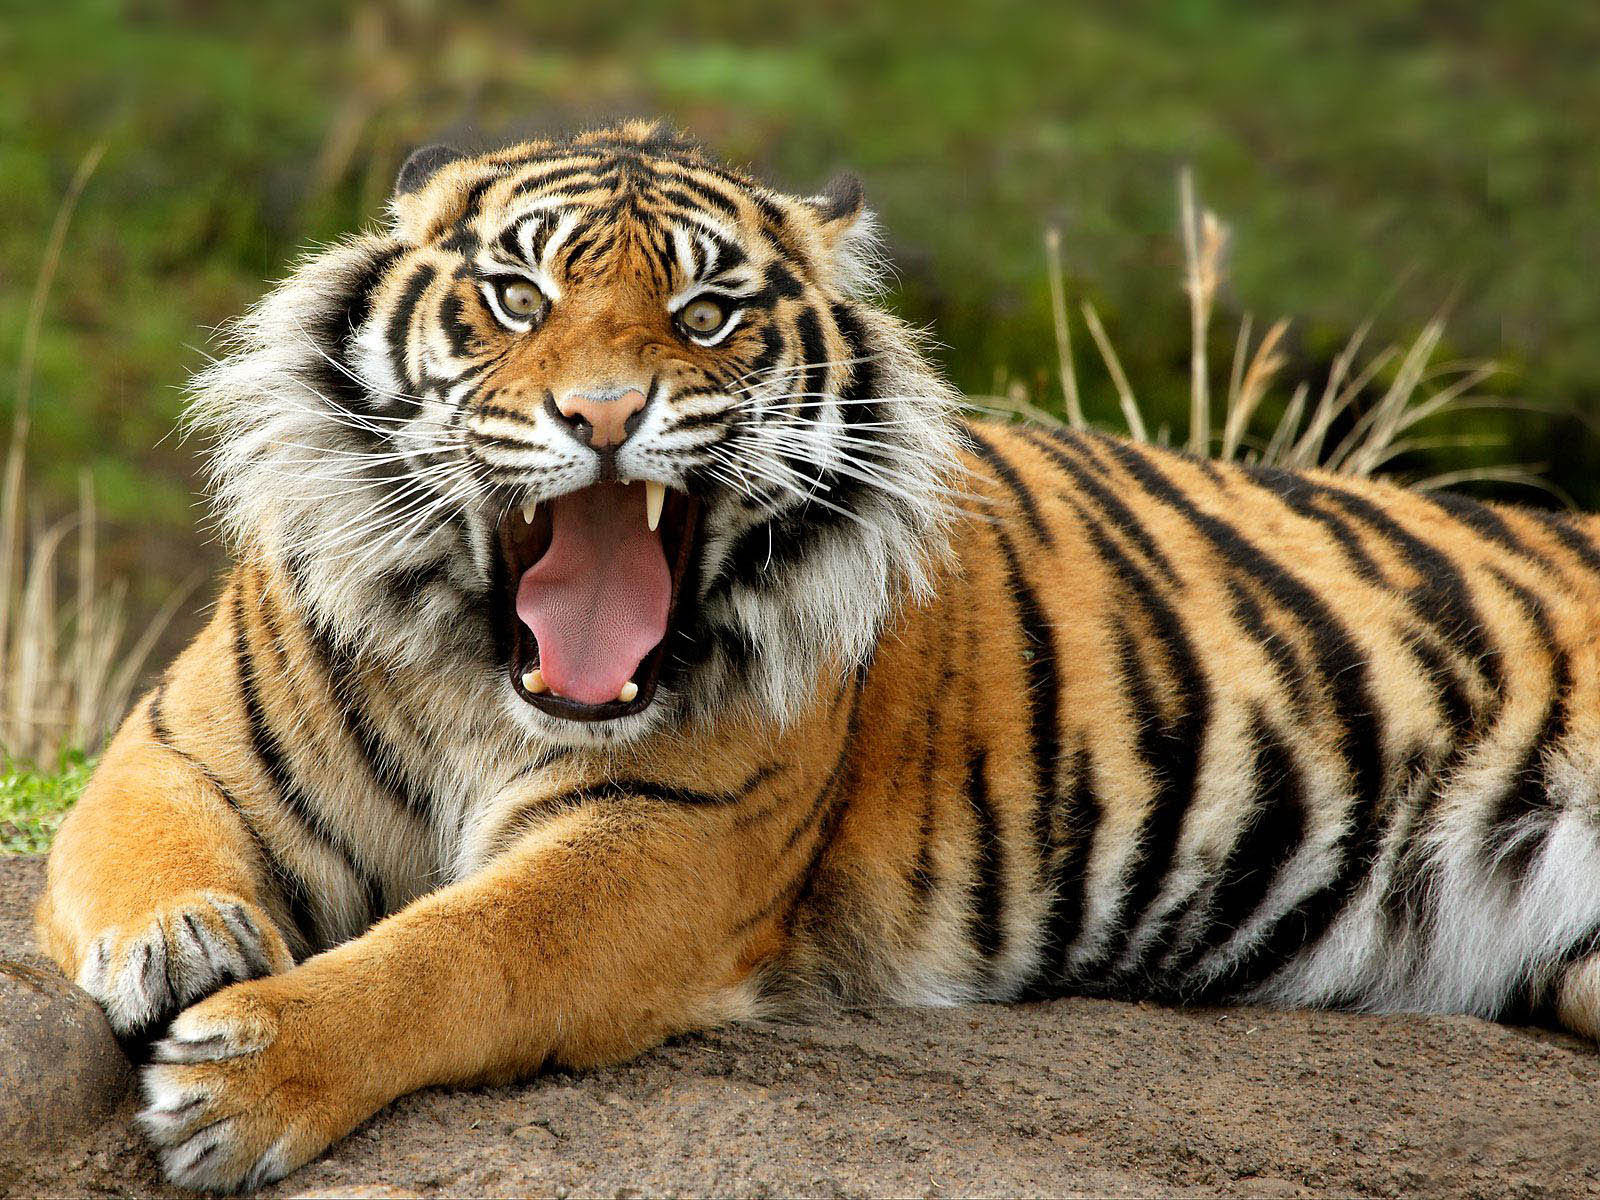 25 Amazing Photos Of Wild Animals